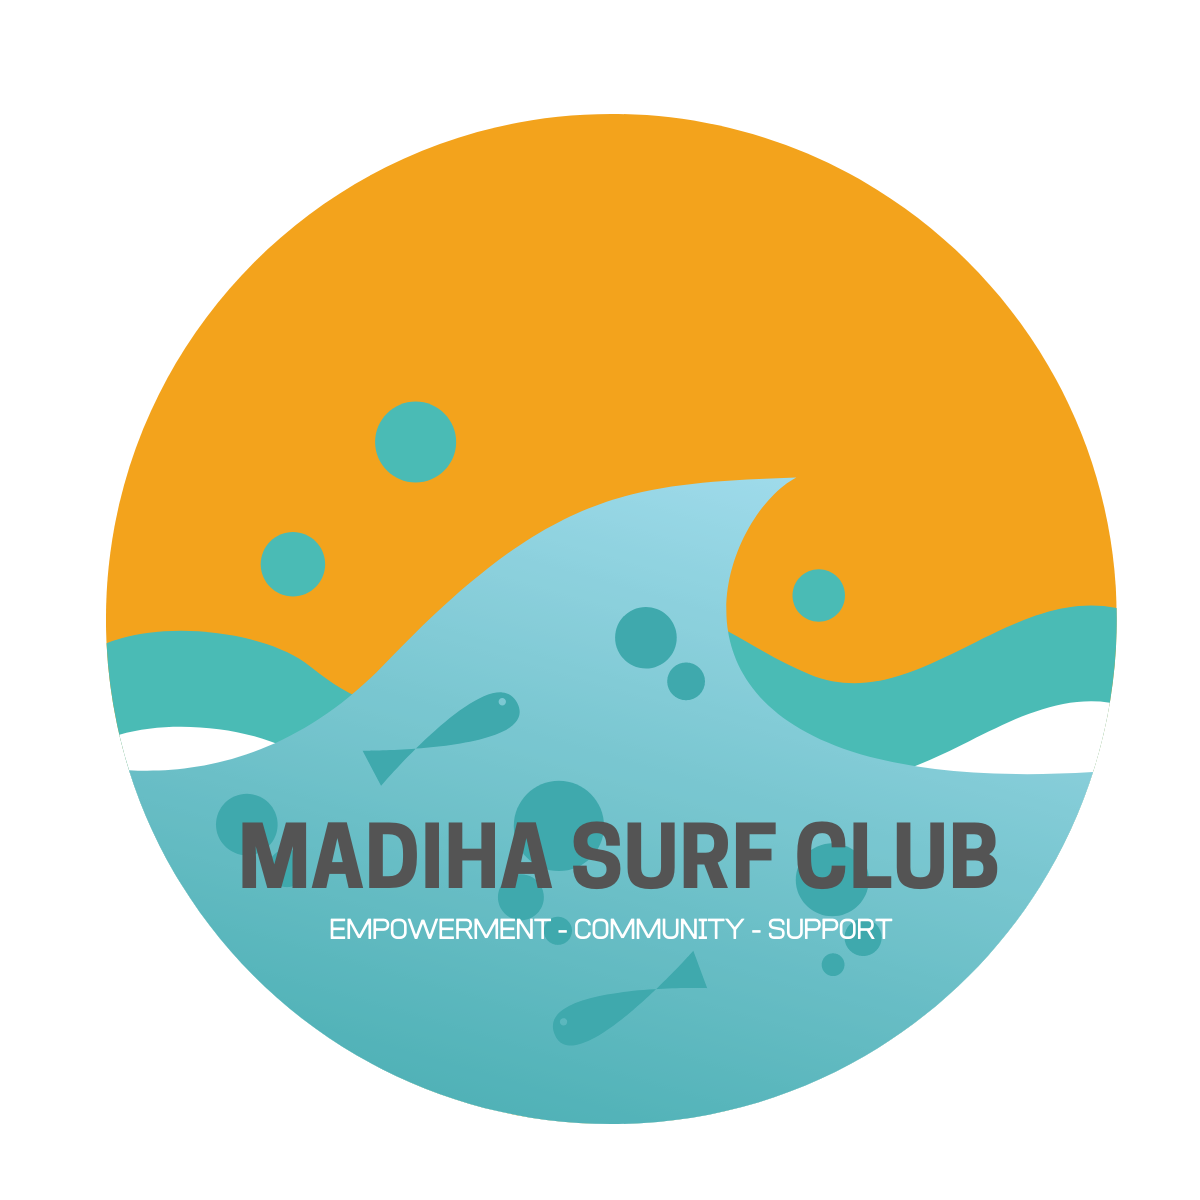 Madiha Surf Club